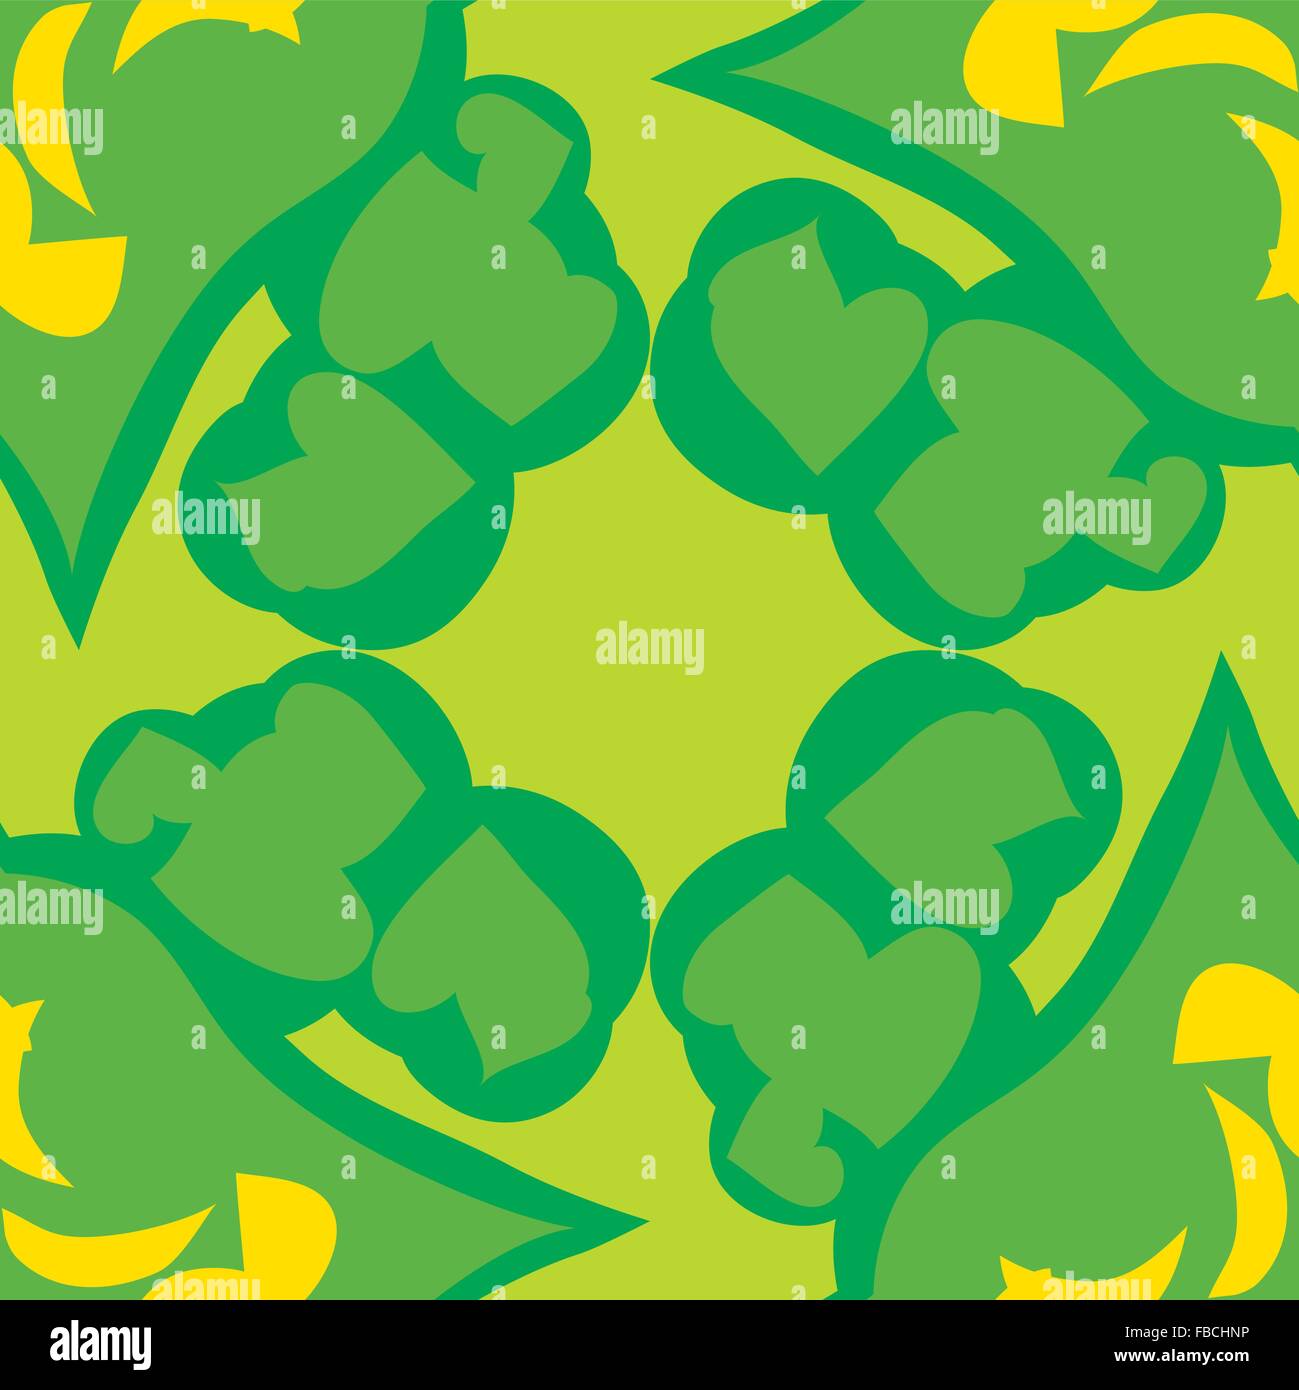 Fliesen Muster aus grünen nahtlose Formen mit gelben Spitzen Stock Vektor